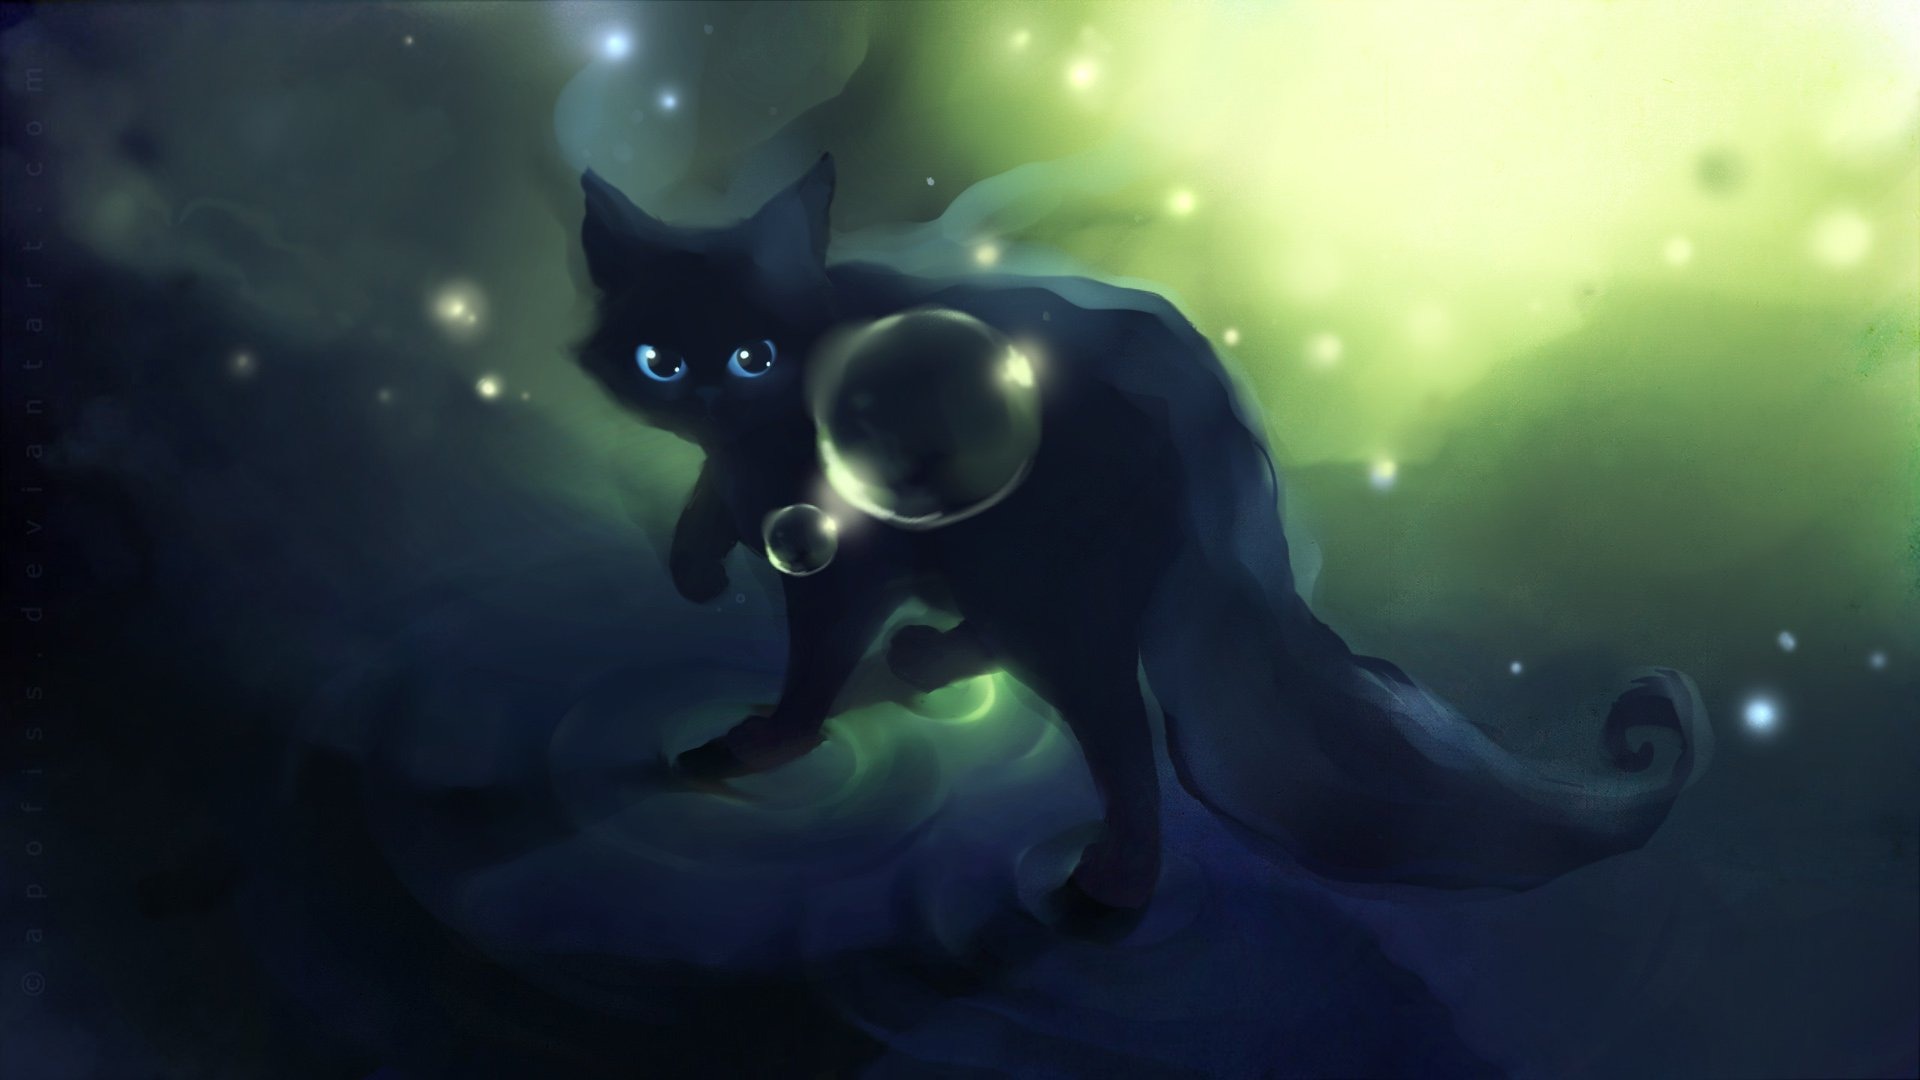 Apofiss 작은 검은 고양이 벽지 수채화 삽화 #12 - 1920x1080